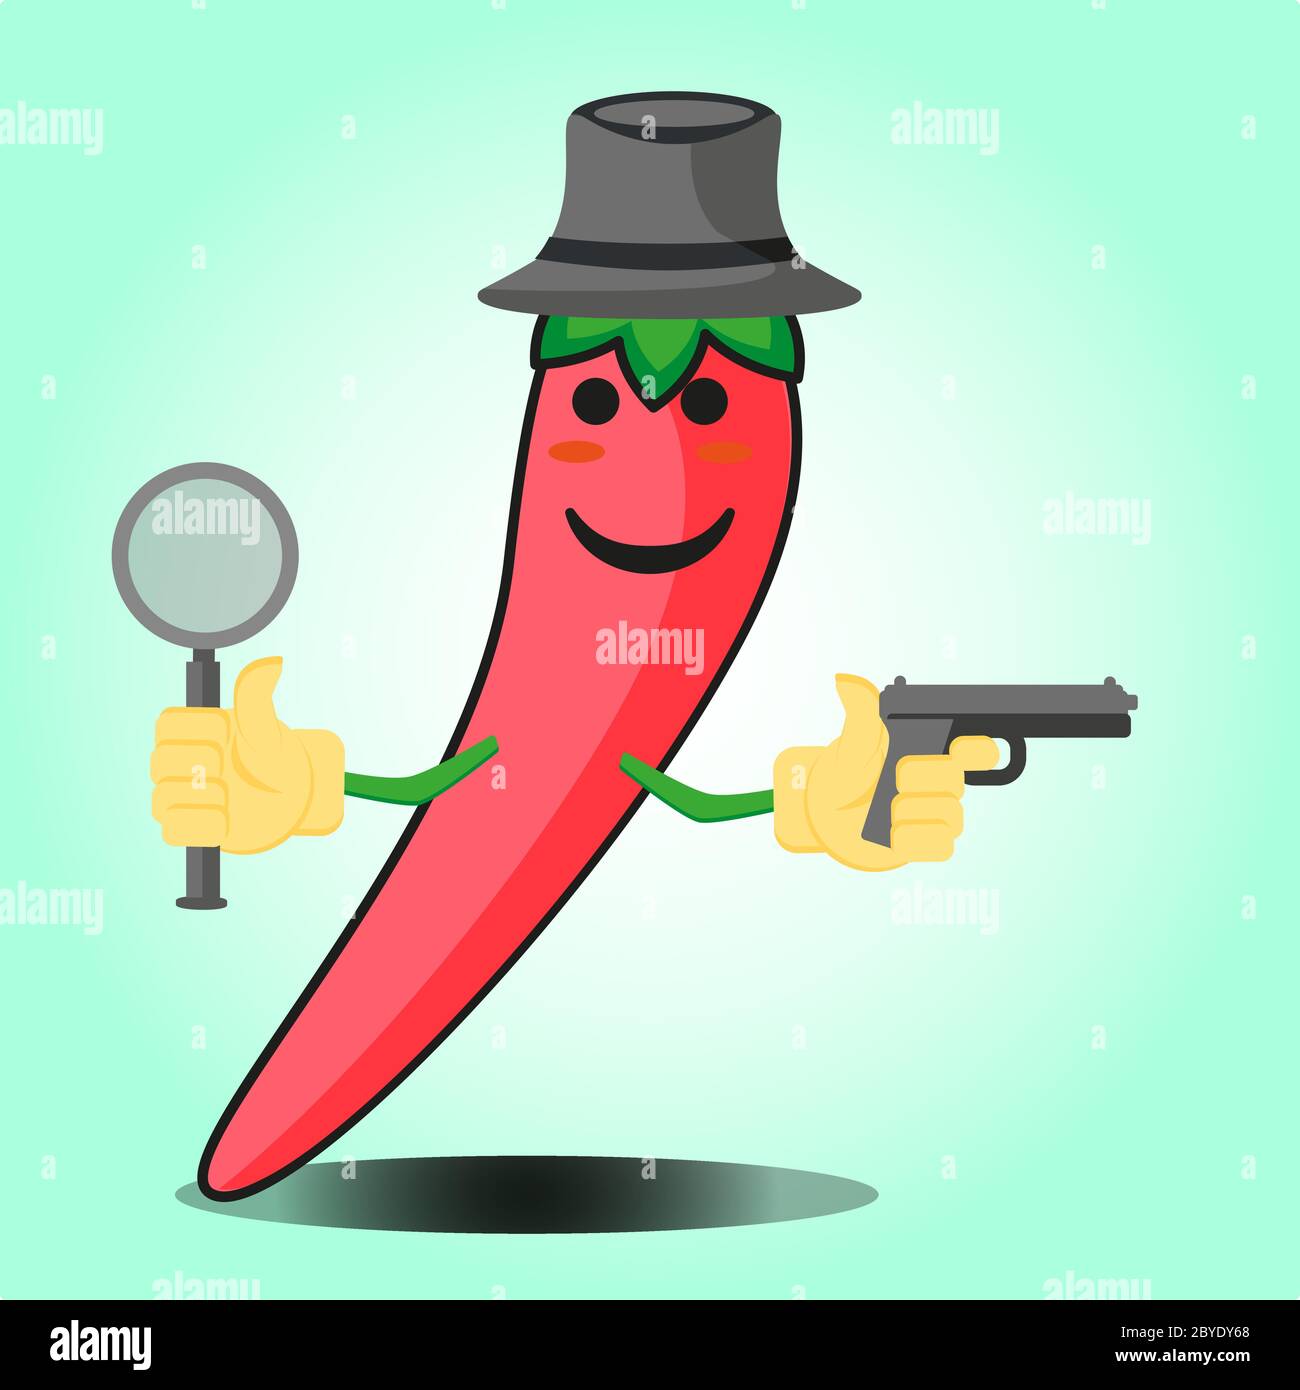 Adorable personnage de dessin animé détective mexicain au piment avec un chapeau et un motif représentant une arme à feu Illustration de Vecteur